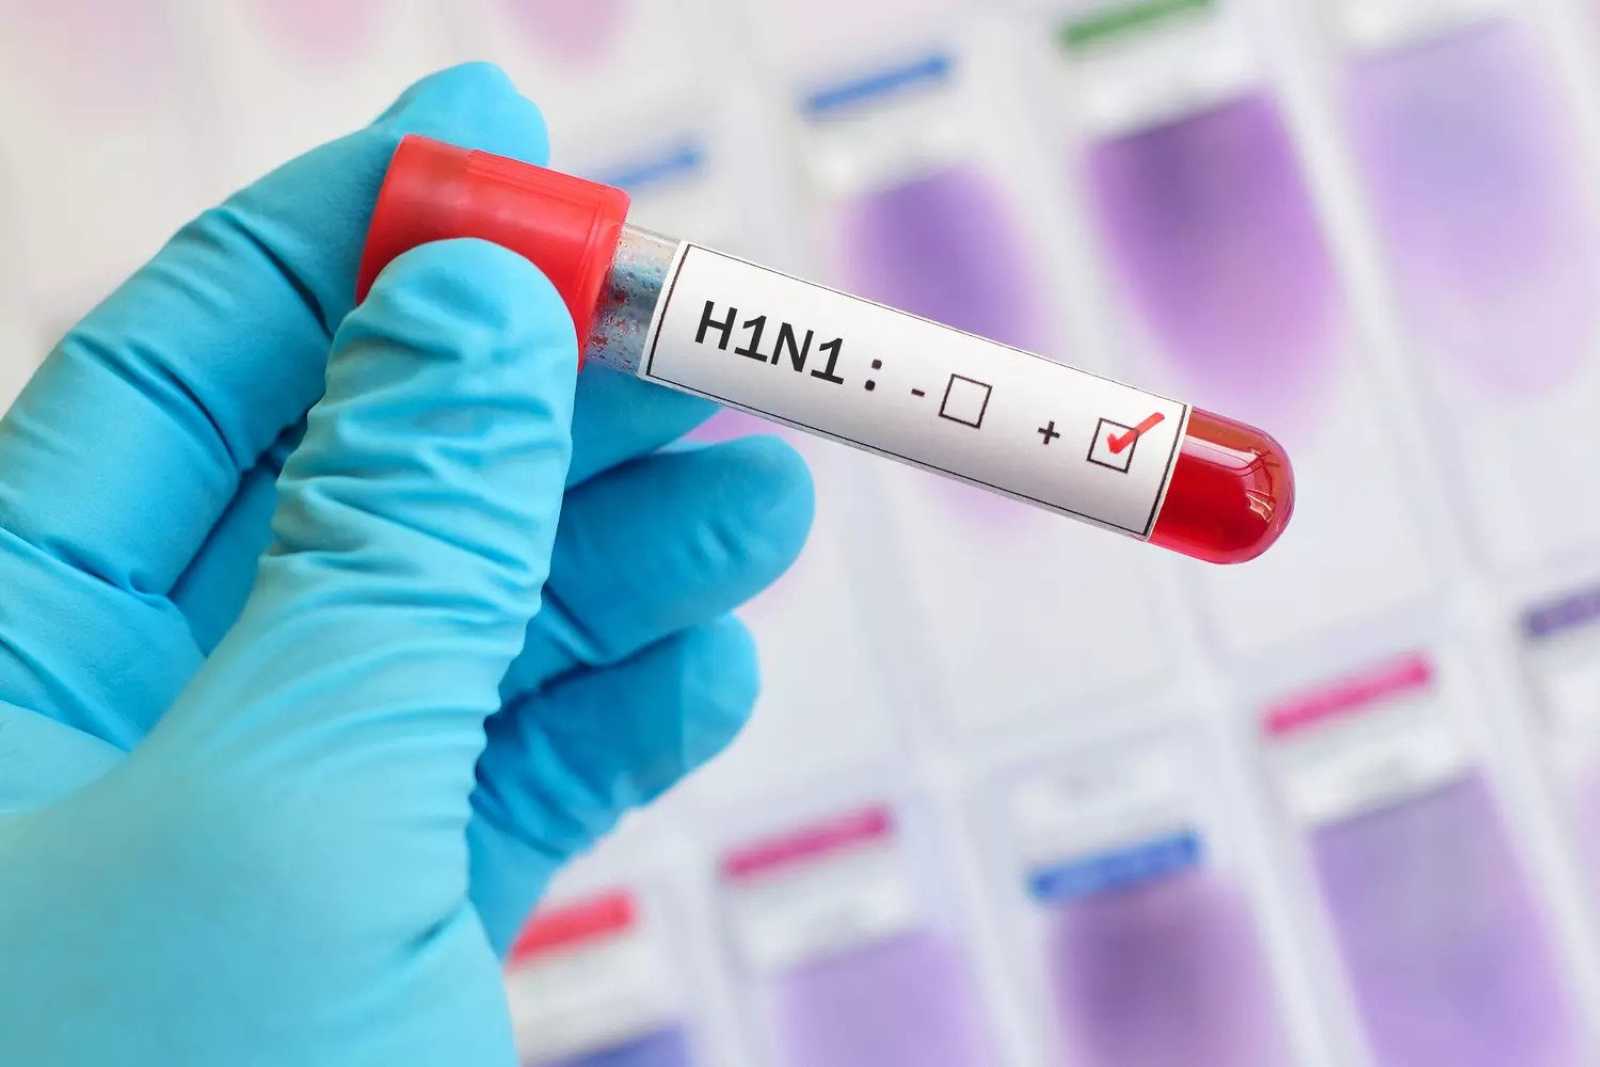 Αυτά είναι τα συμπτώματα της γρίπης Η1Ν1 – Πώς μεταδίδεται